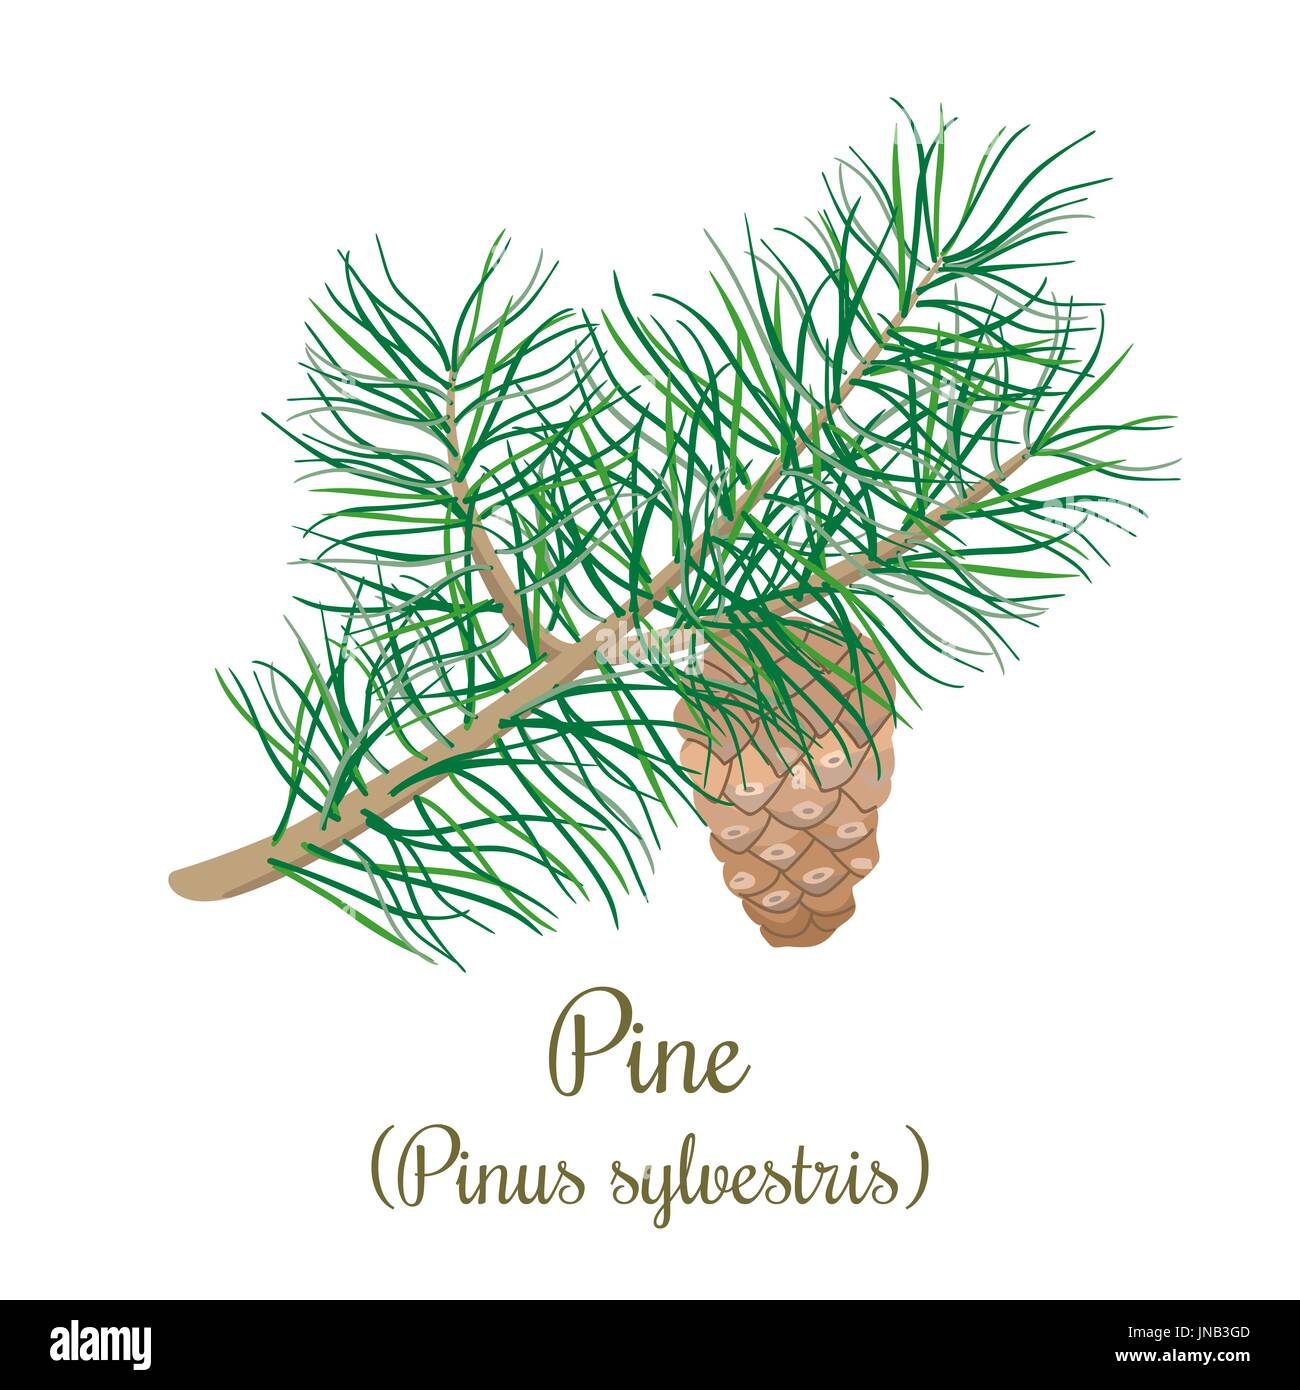 Pine Tree twig avec un cône. Branche verte de Pinus sylvestris. Vector illustration pour l'étiquette, poster, spa, la conception, les cosmétiques, les soins de santé naturels produ Illustration de Vecteur